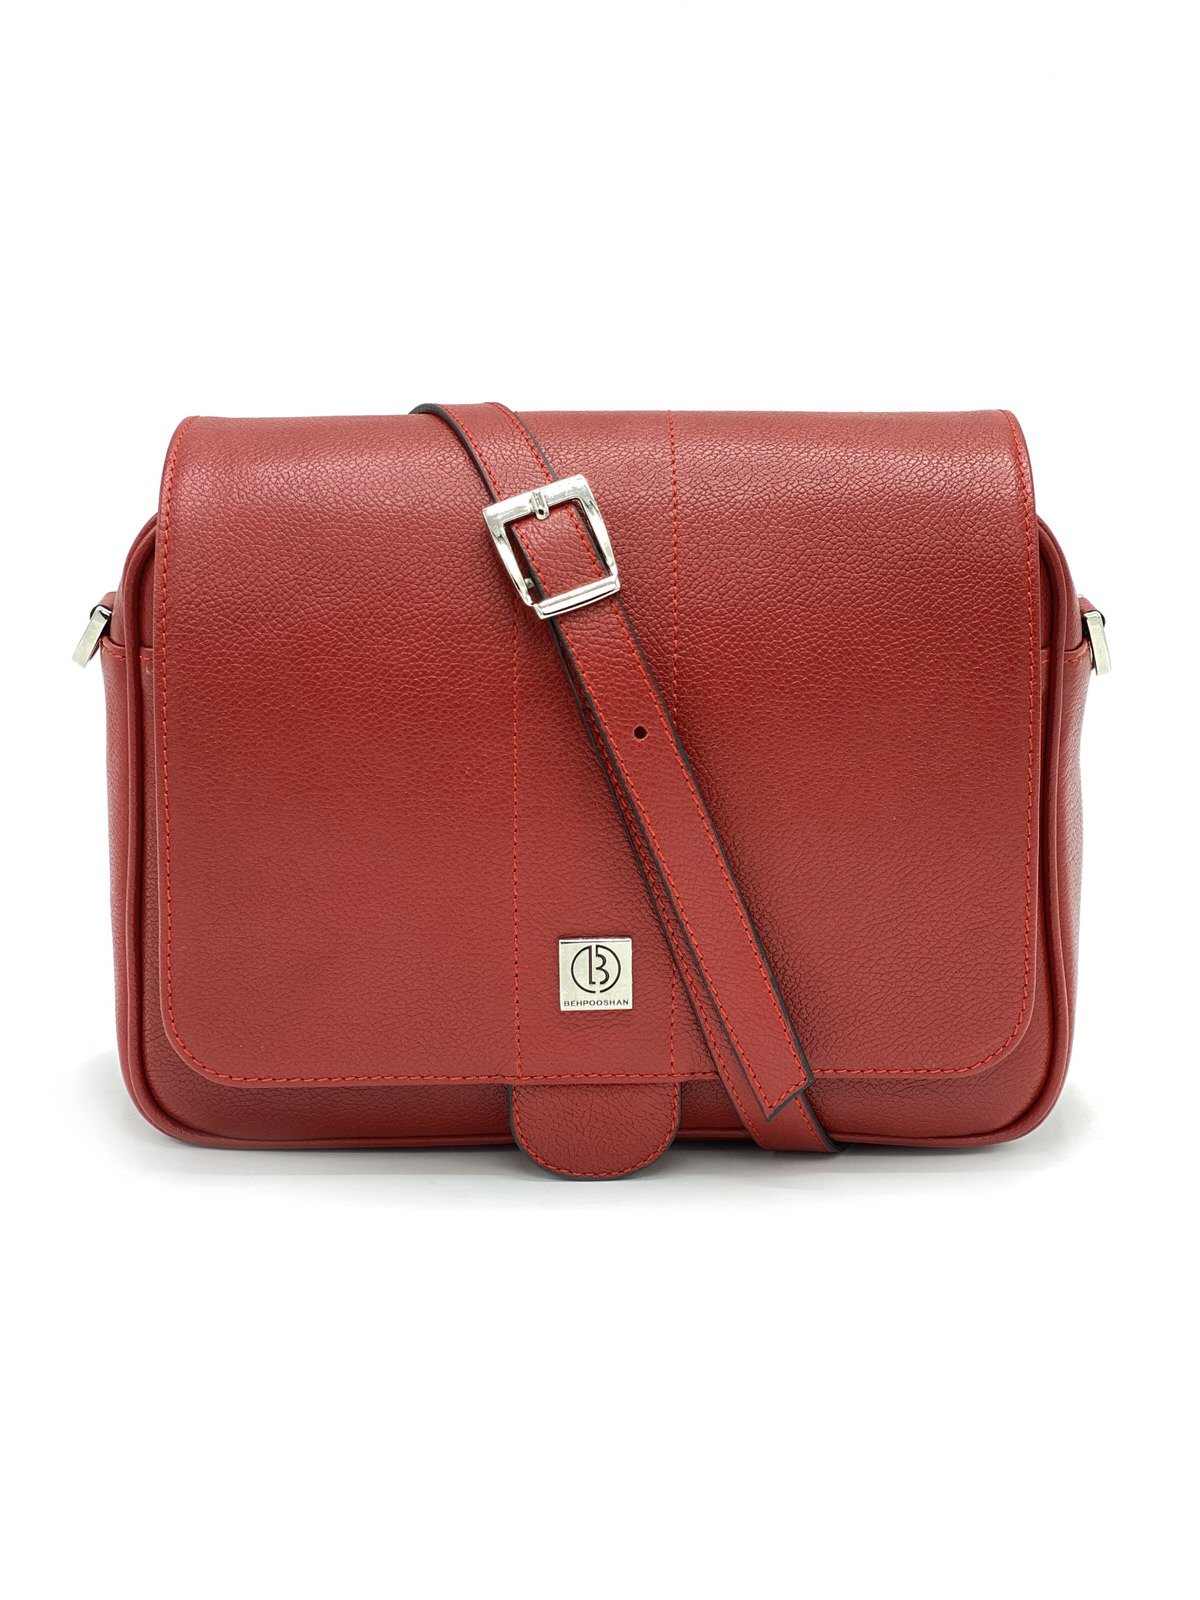 کیف زنانه چرم گاوی112 , قرمز فلوتر